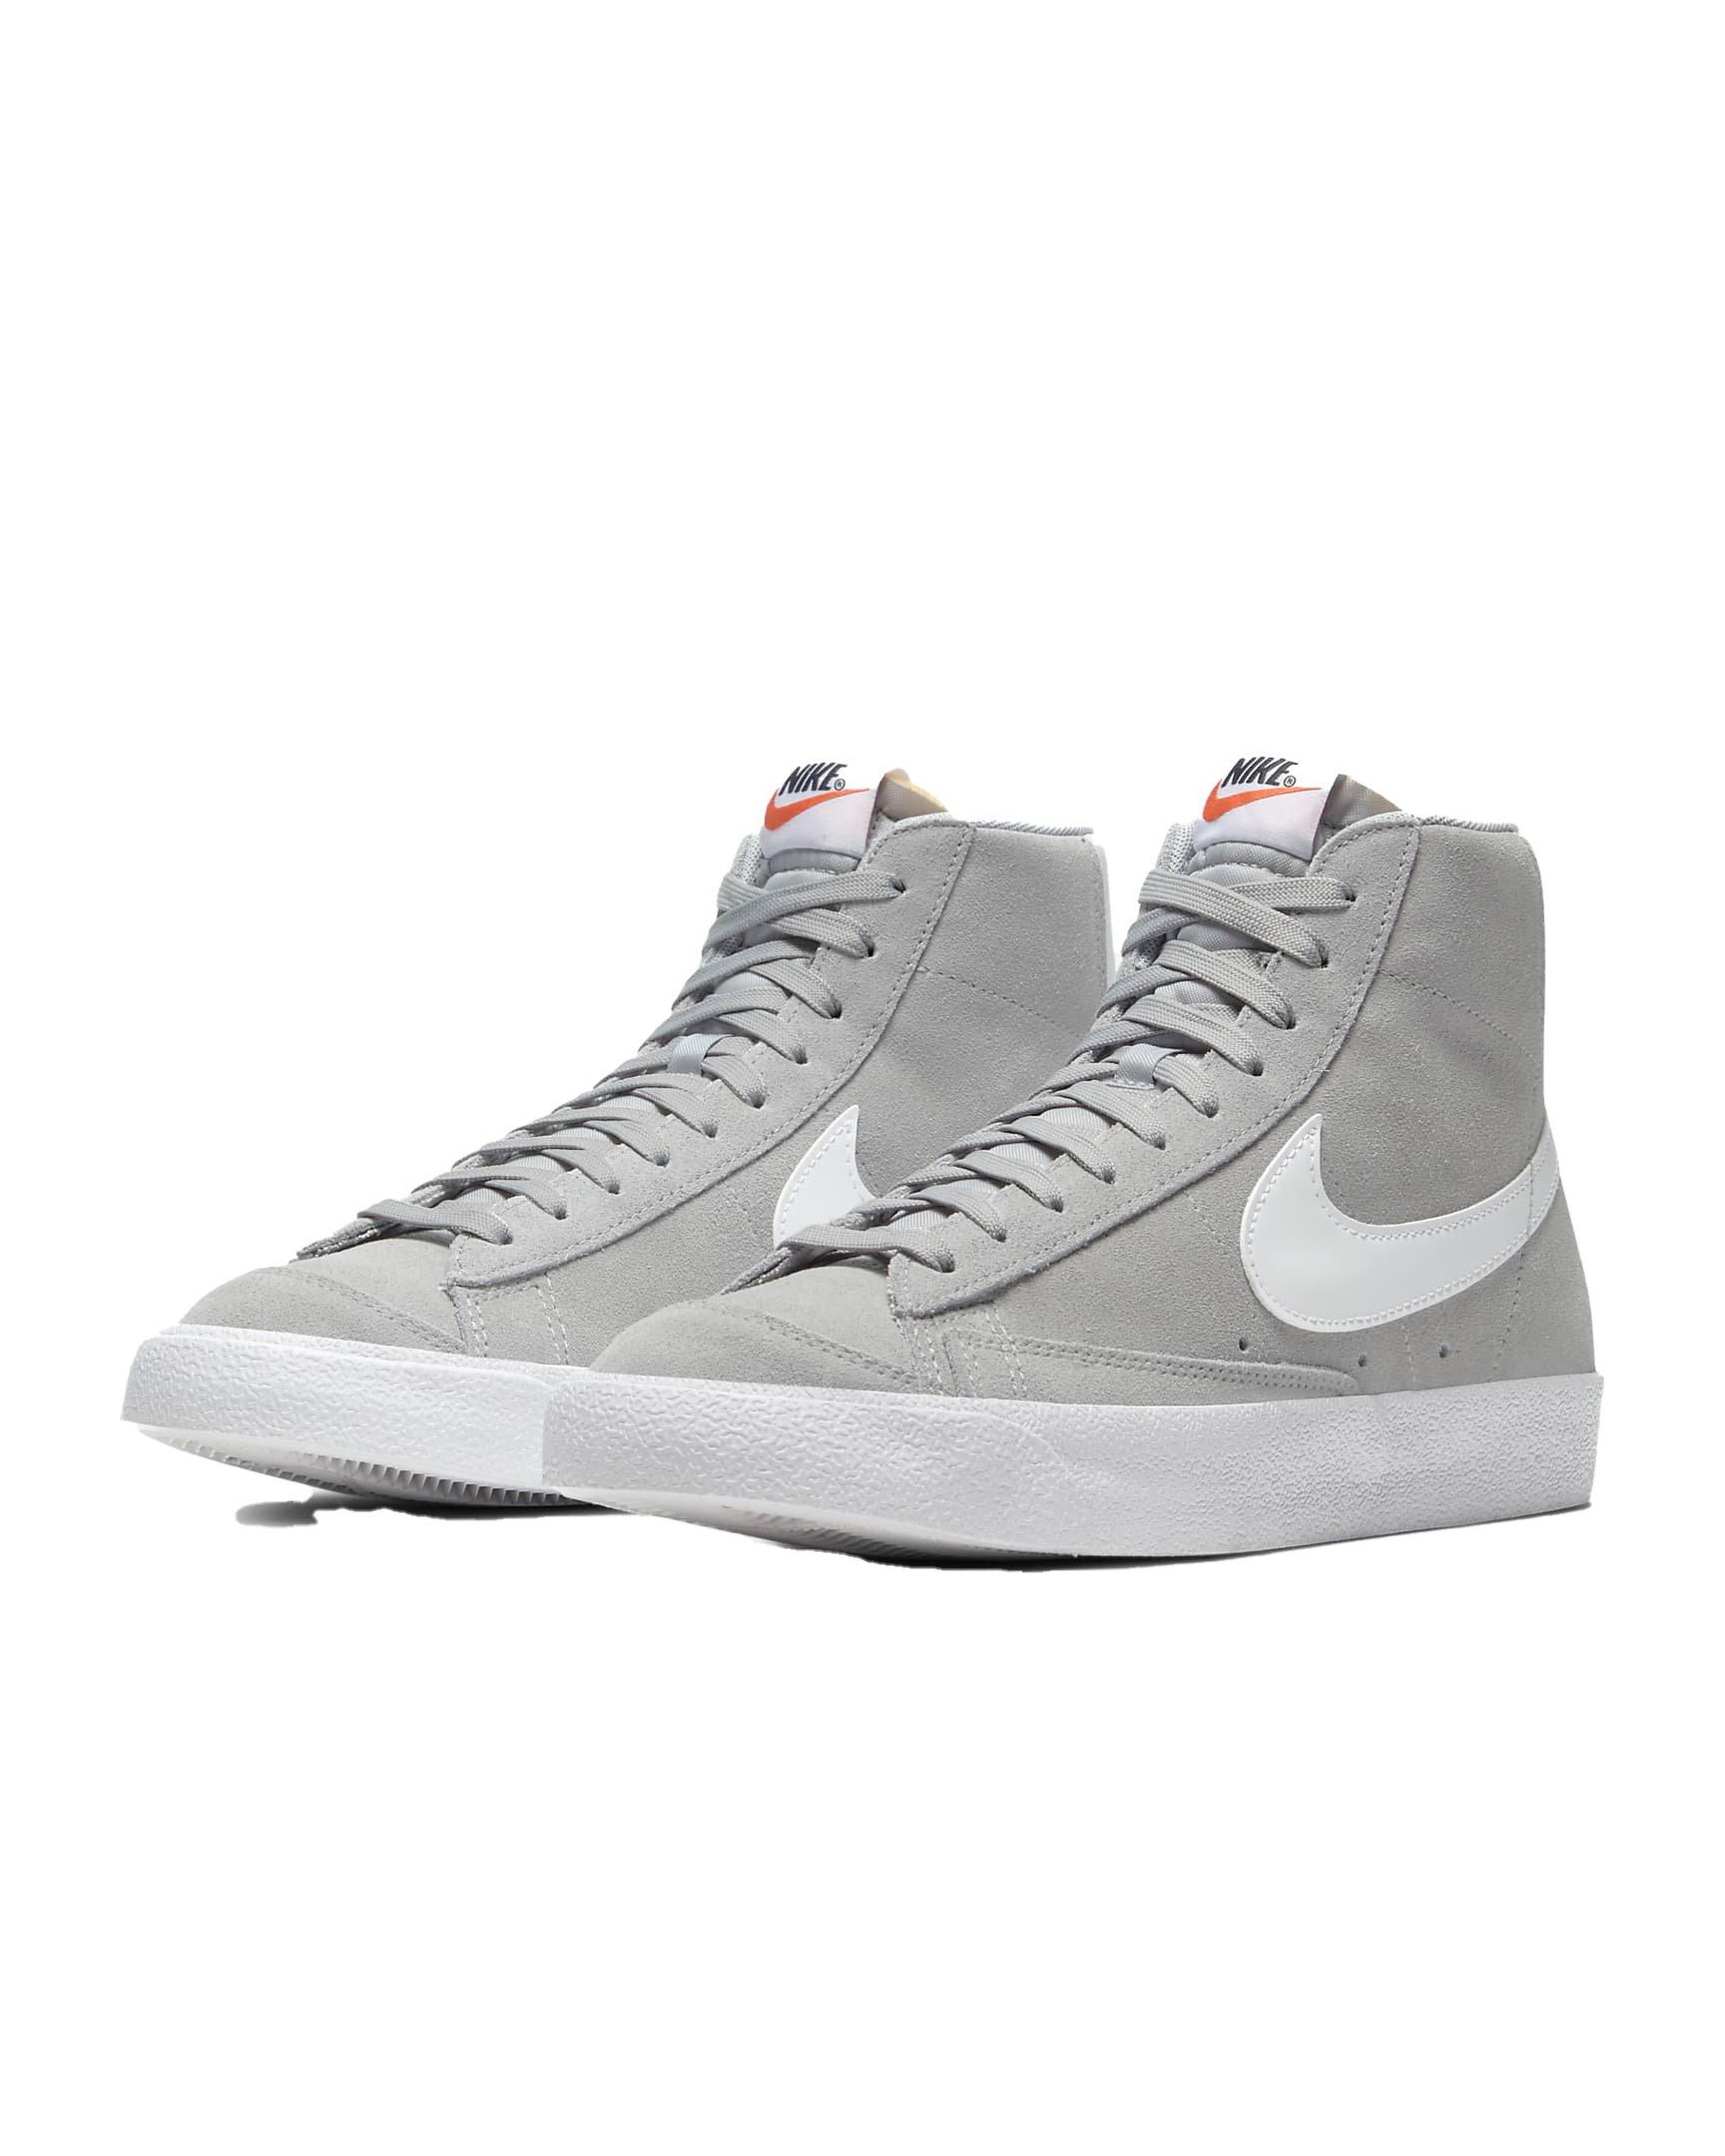 Actriz gris novedad Nike Blazer Mid 77 Suede "Light Grey" Men's Shoe